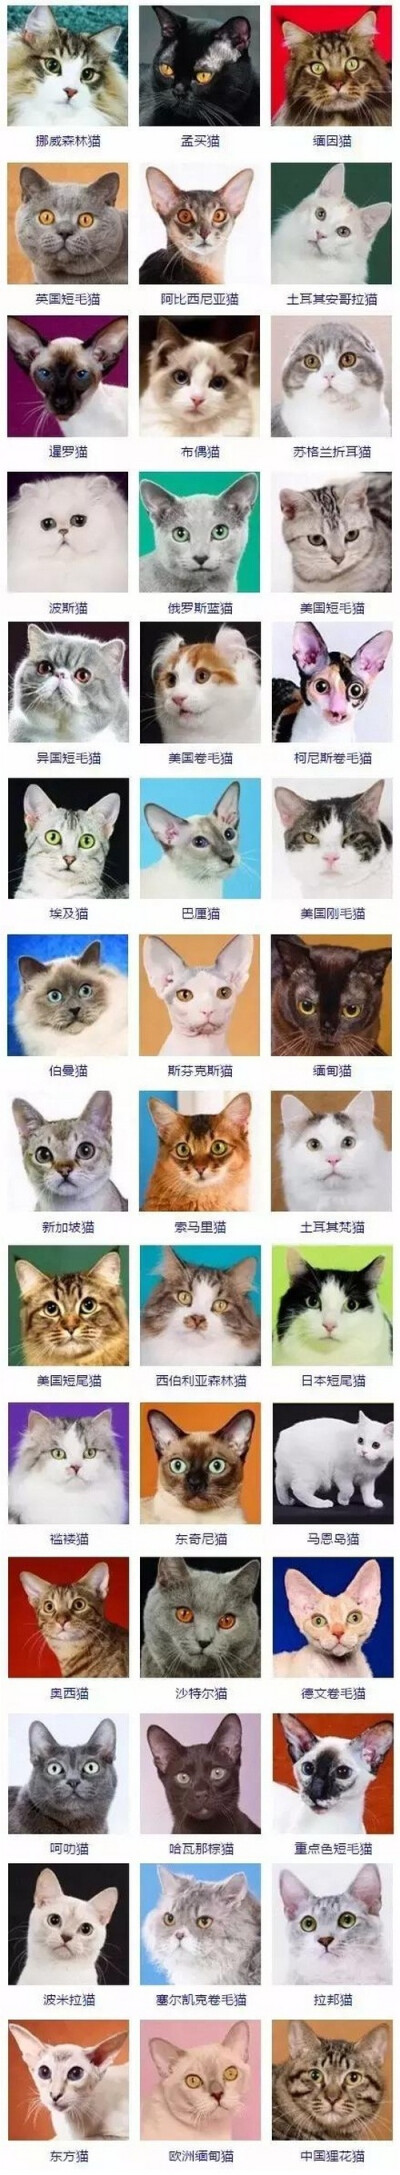 猫的品种 